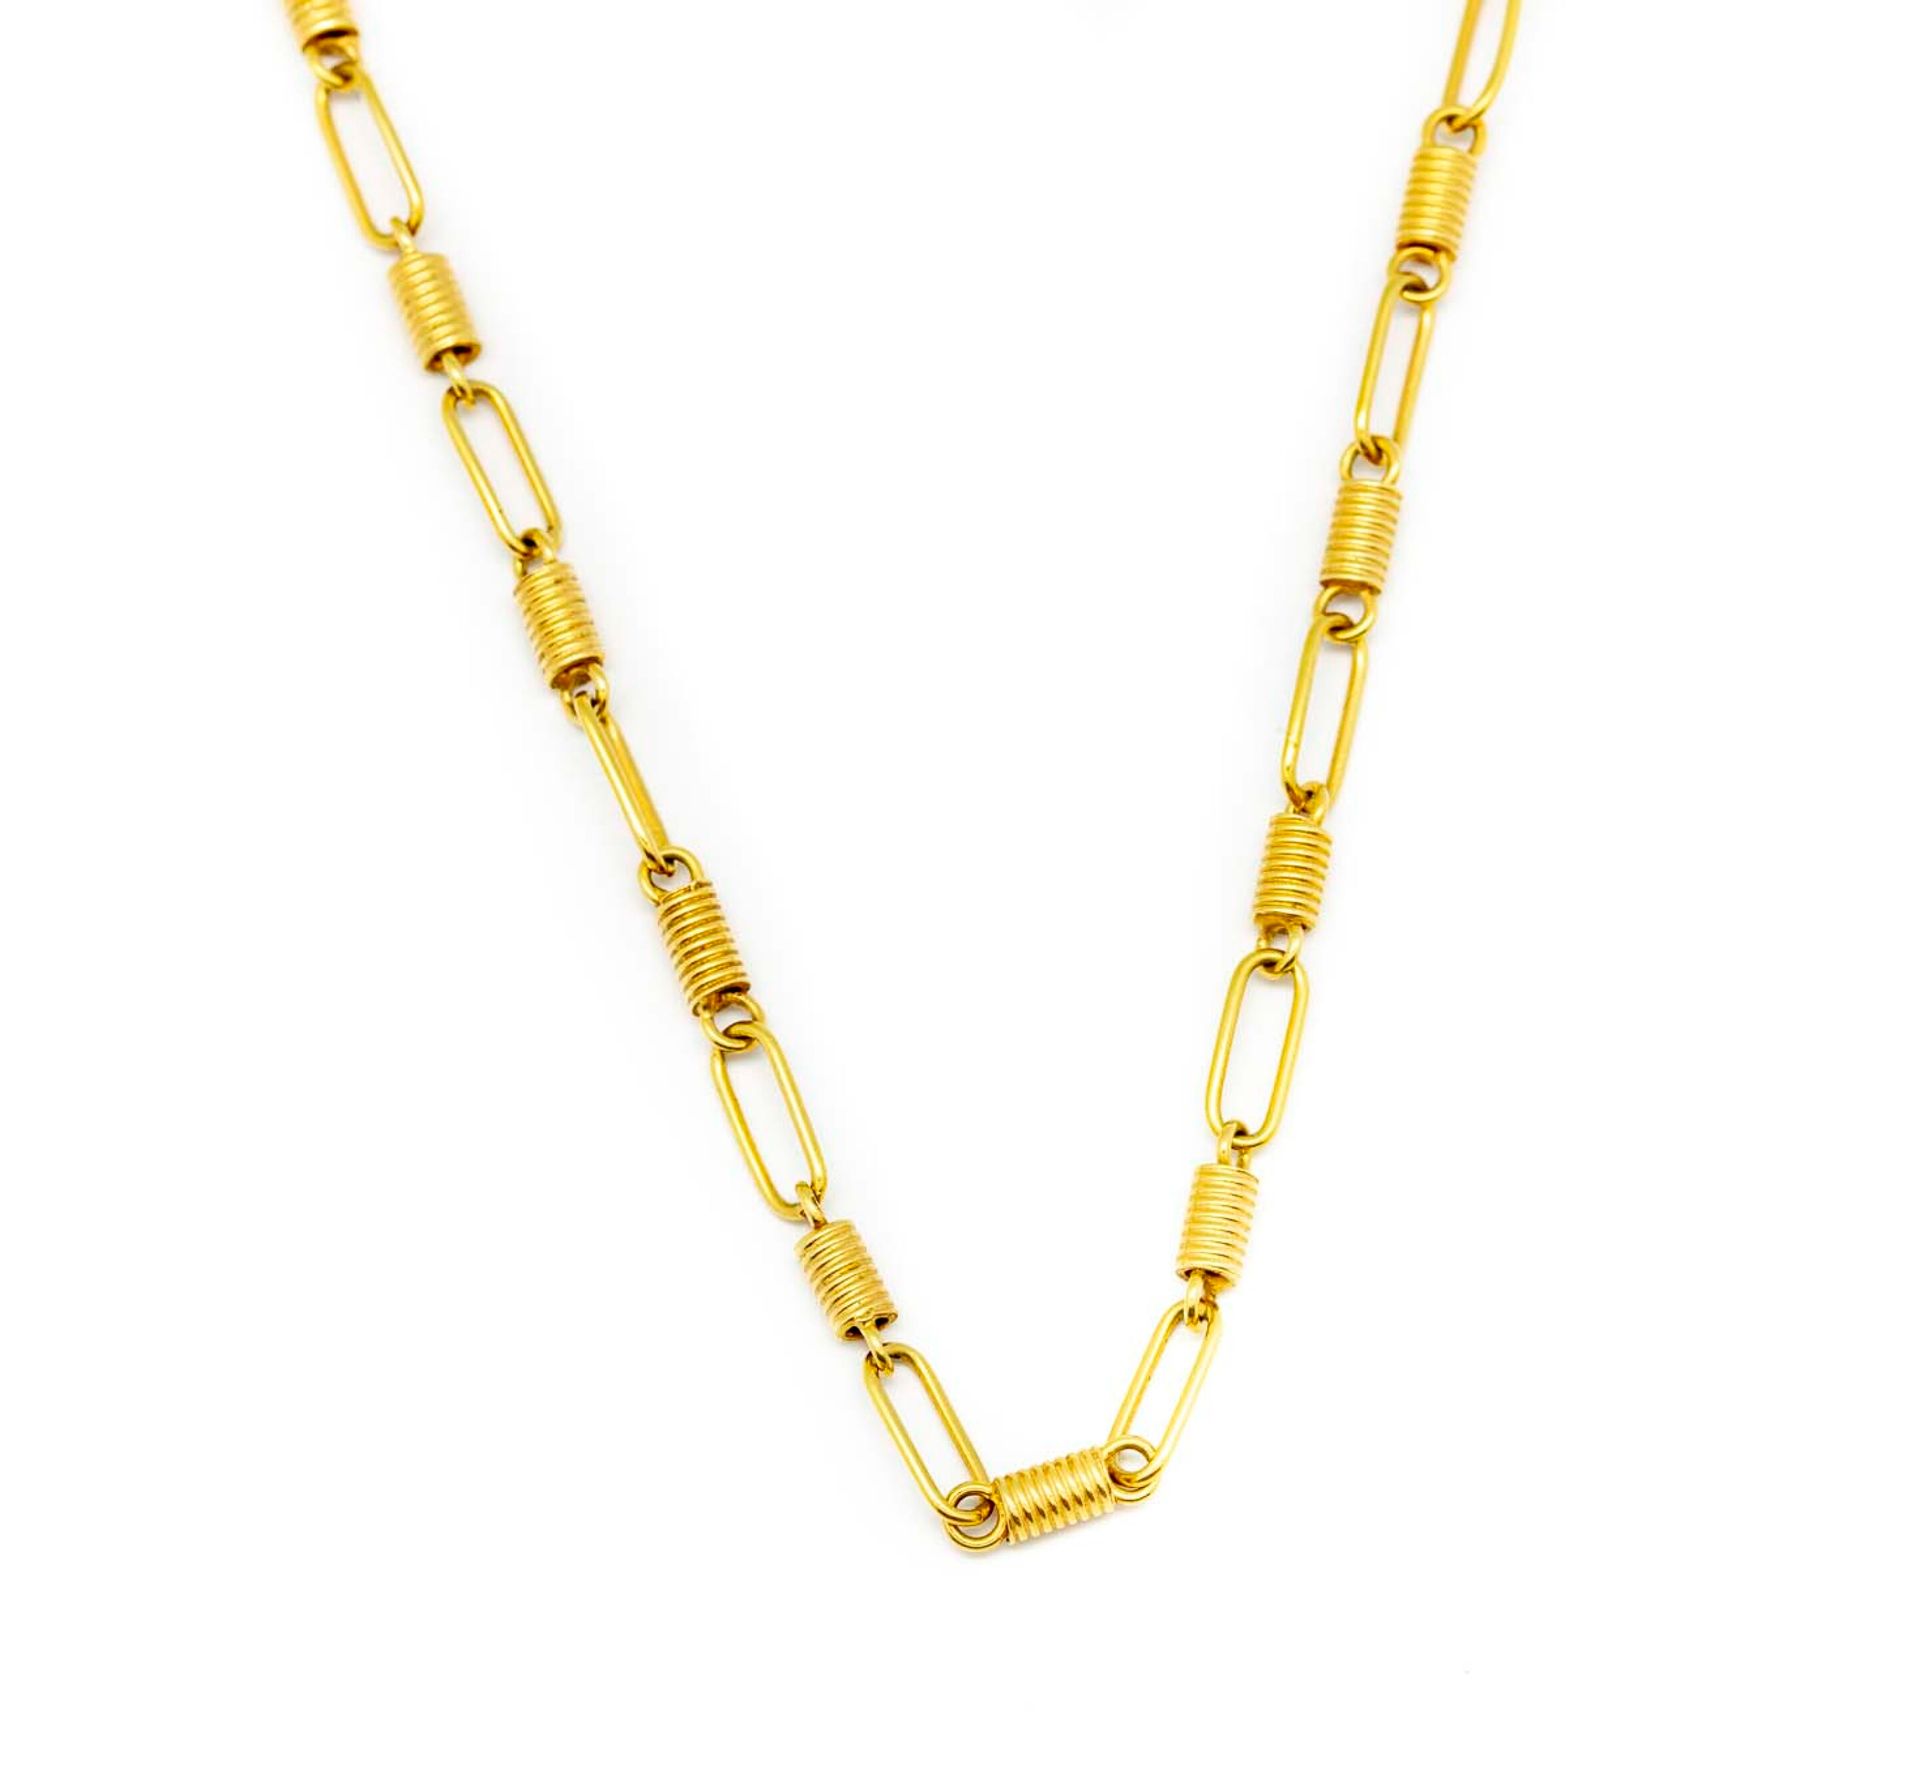 Null 扁平链节和小圆柱形图案的黄金袖珍链

重量：27克。